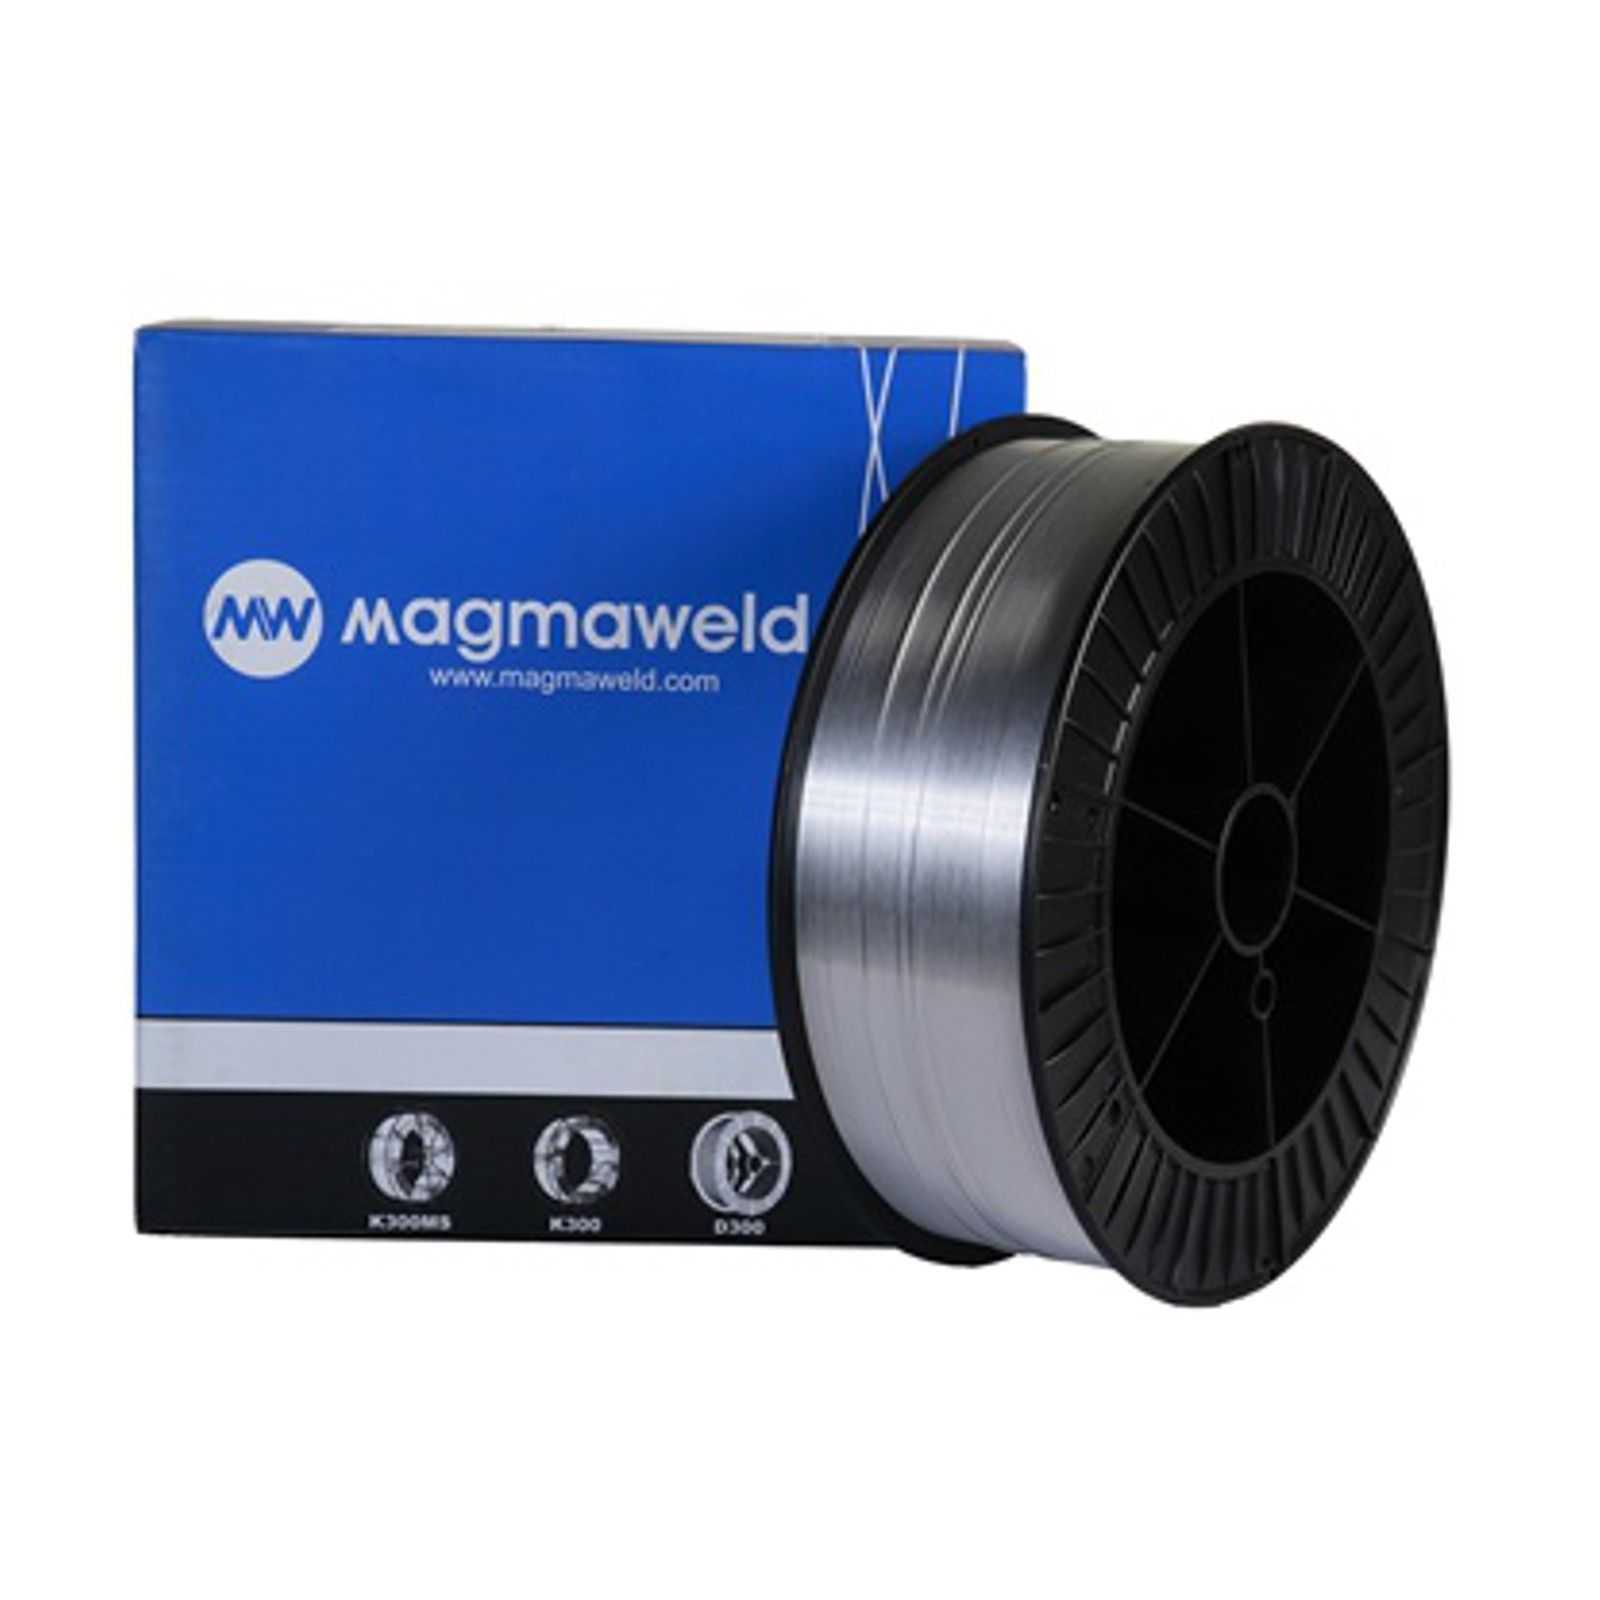 MAGMAWELD AWS 4043 AlSi 5 (3.2245) MIG Schweißdraht Aluminium Ø 0,8mm - 2,0 kg (D200 Spule) - M4043.0.8.02 - - 39,96 € - 